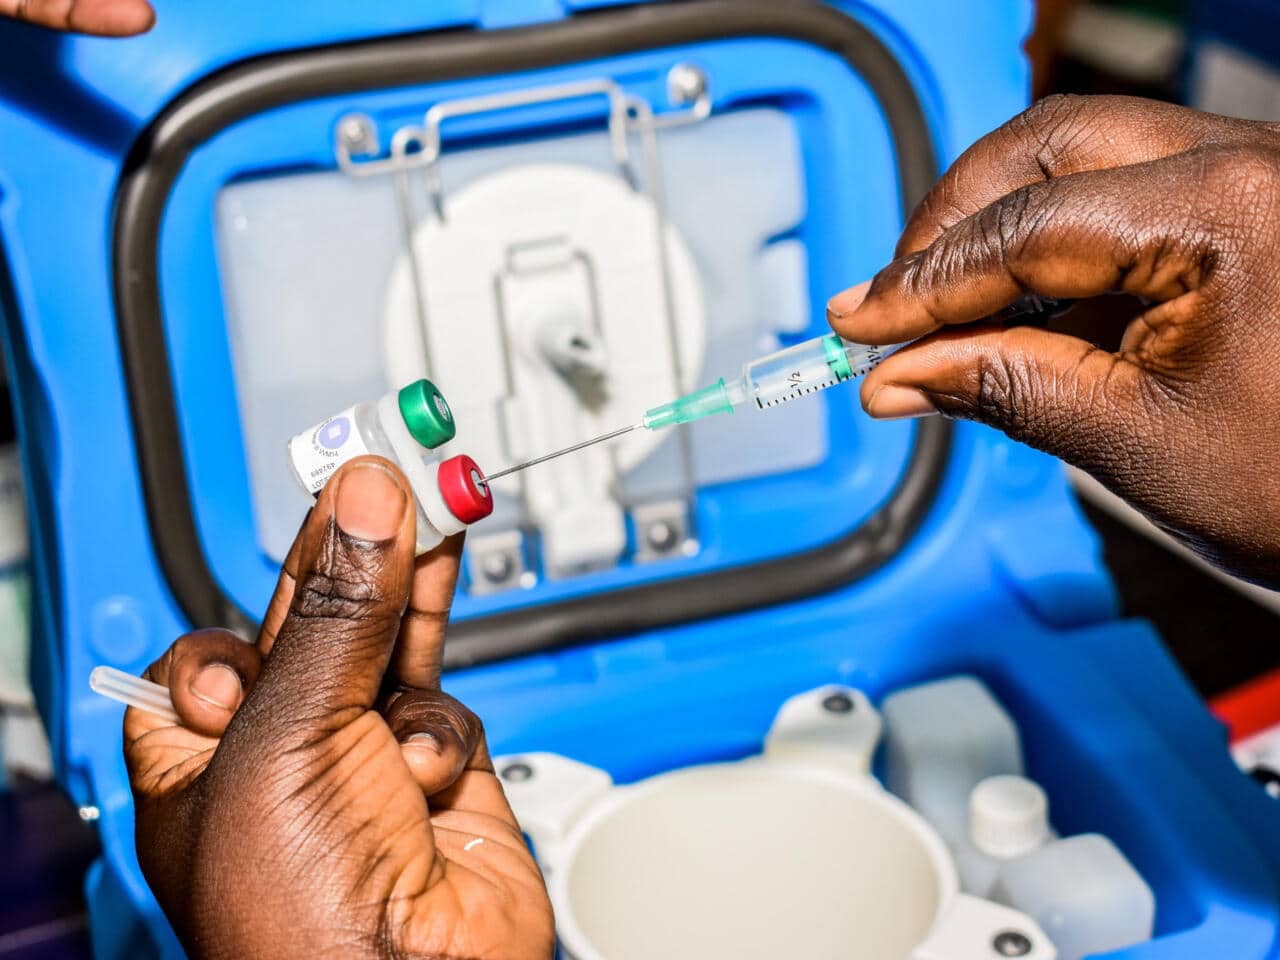 , Paludisme: les innovations face aux résistances du parasite